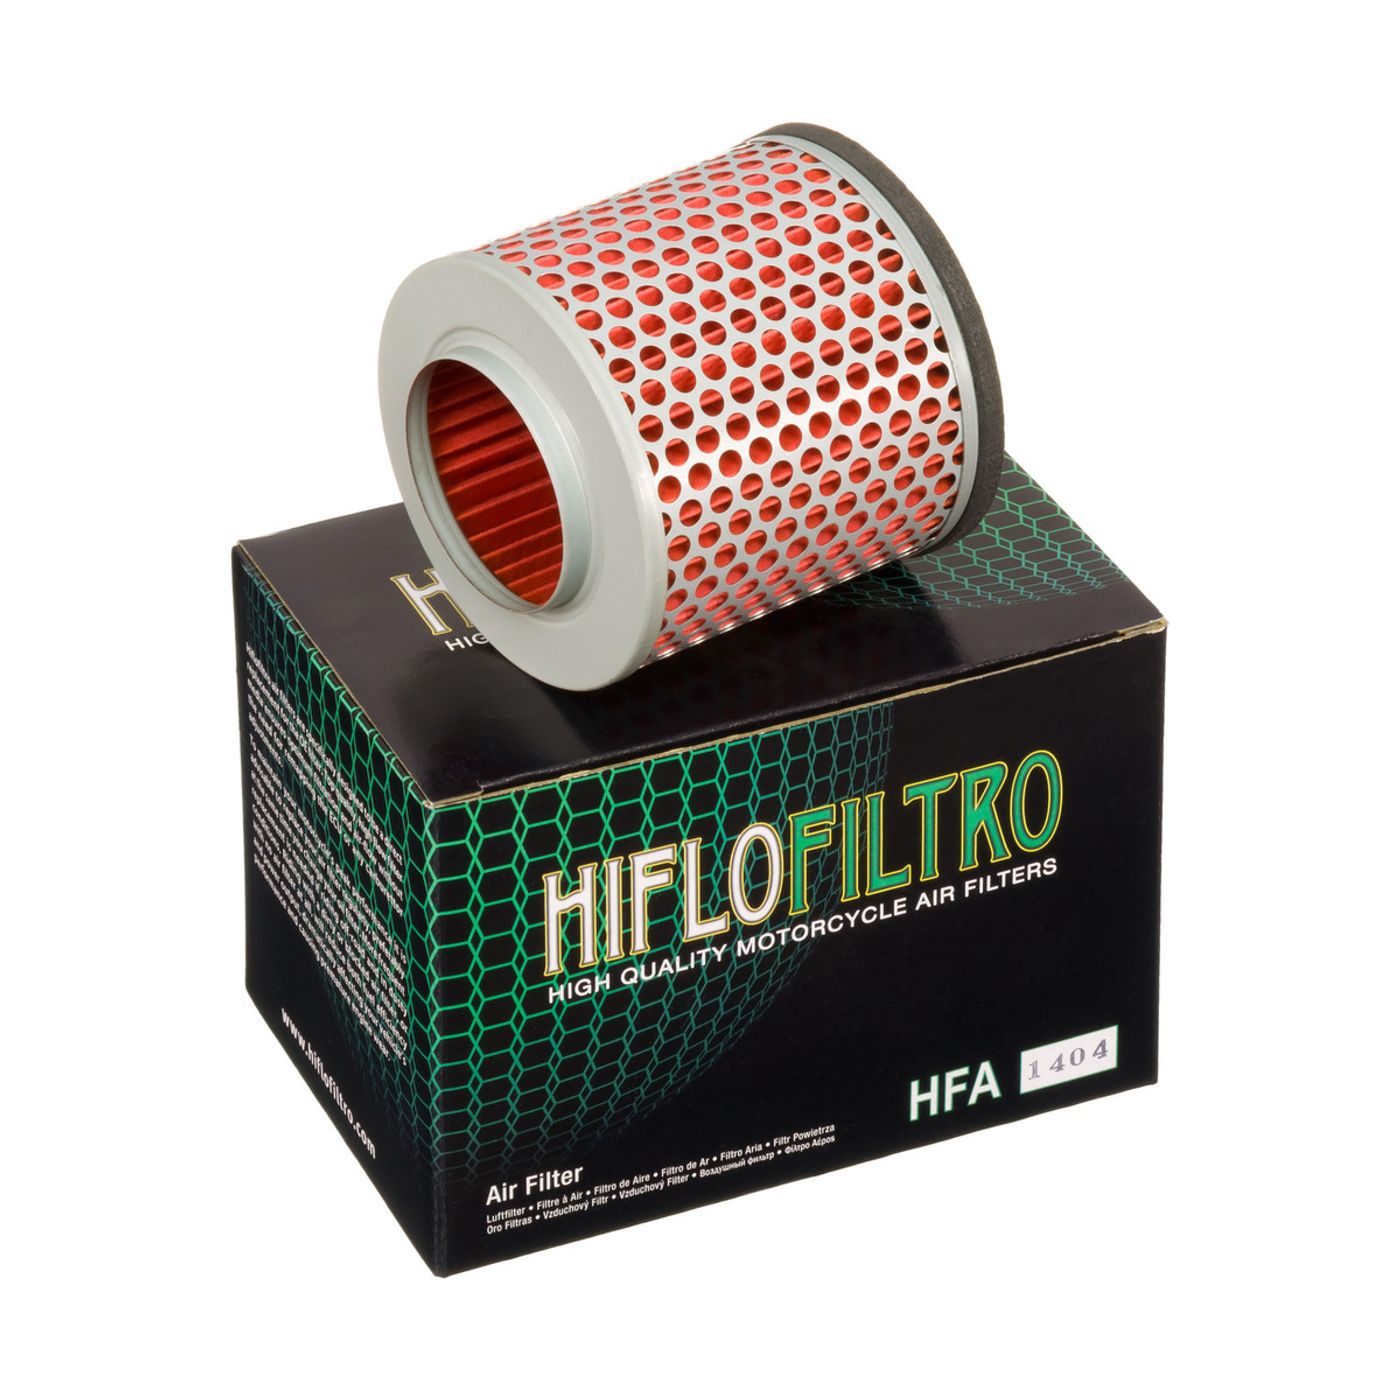 Hiflo Air Filters - HFA1404 image